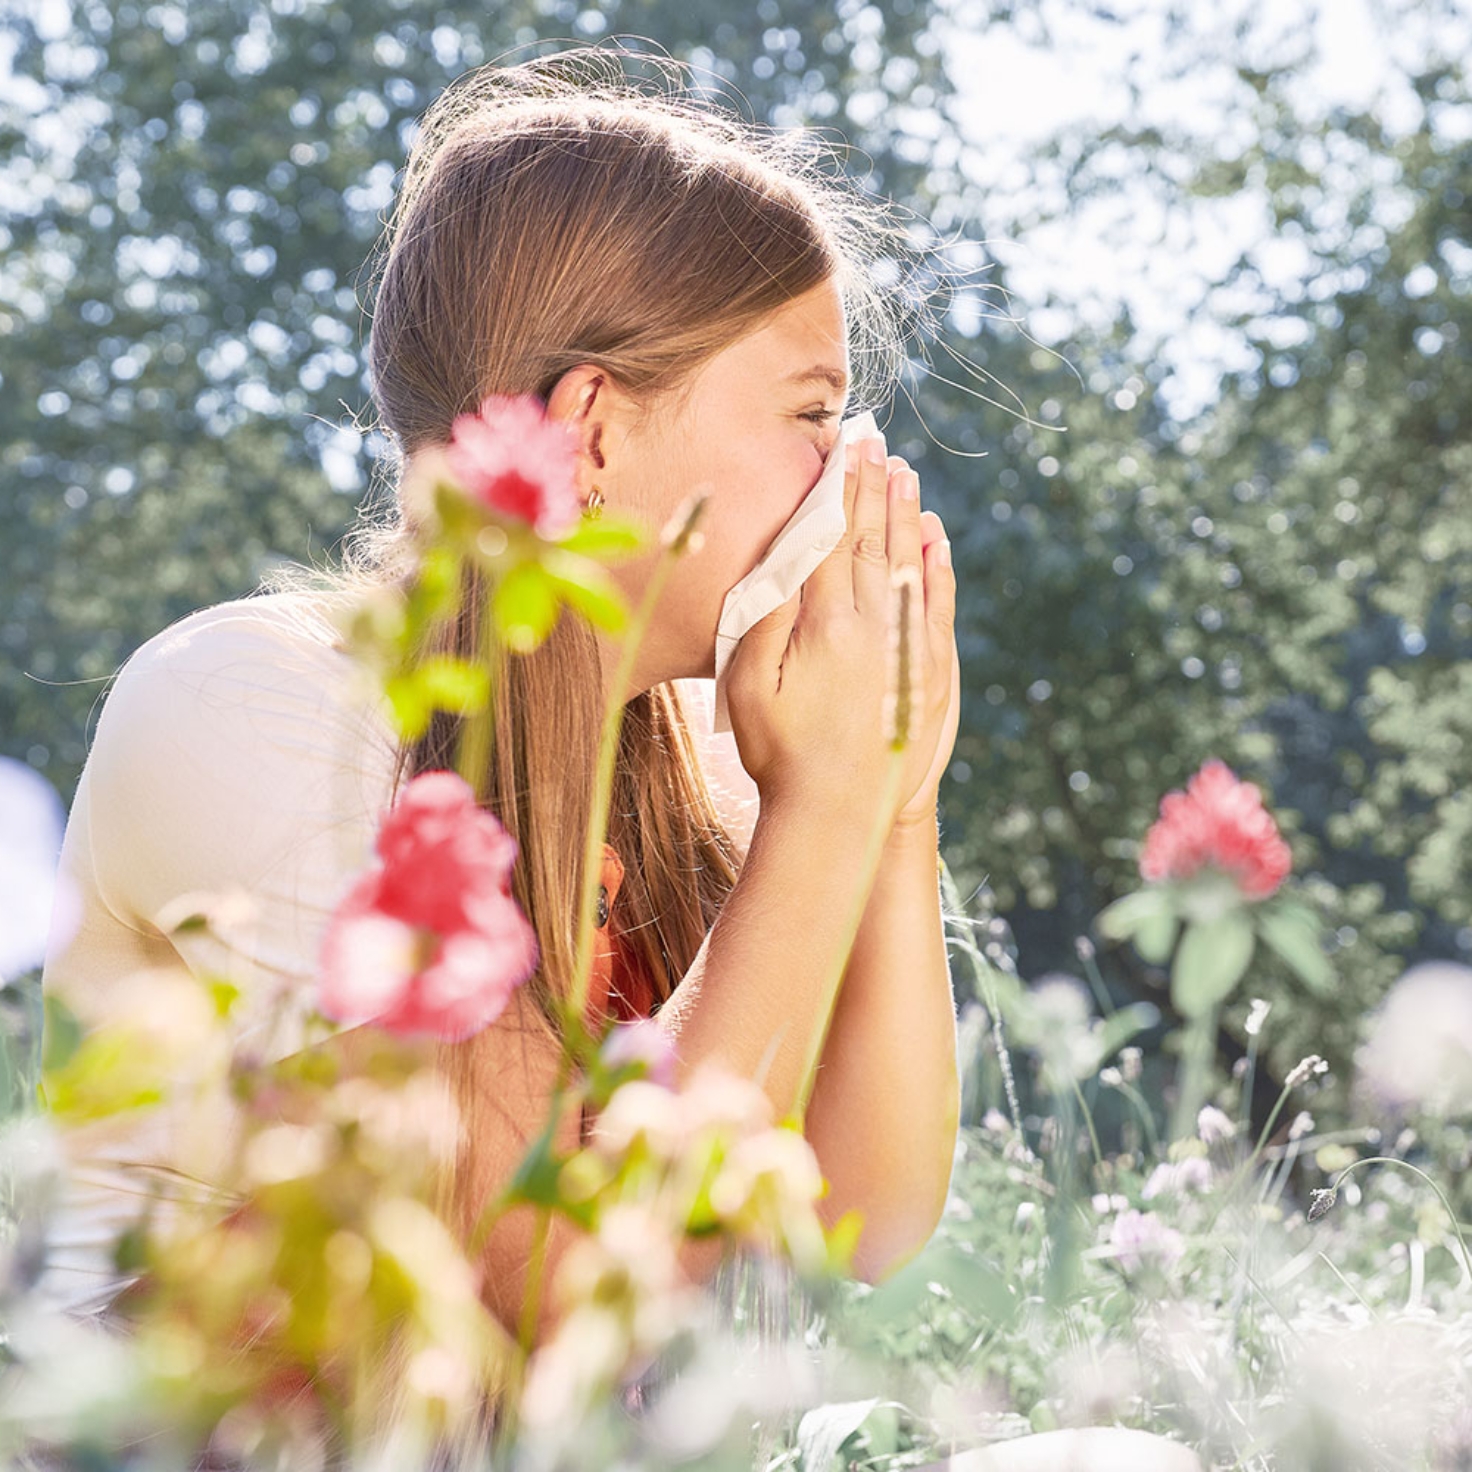 Ein Mädchen sitzt in einer Blumenwiese und niest in ein Taschentuch.